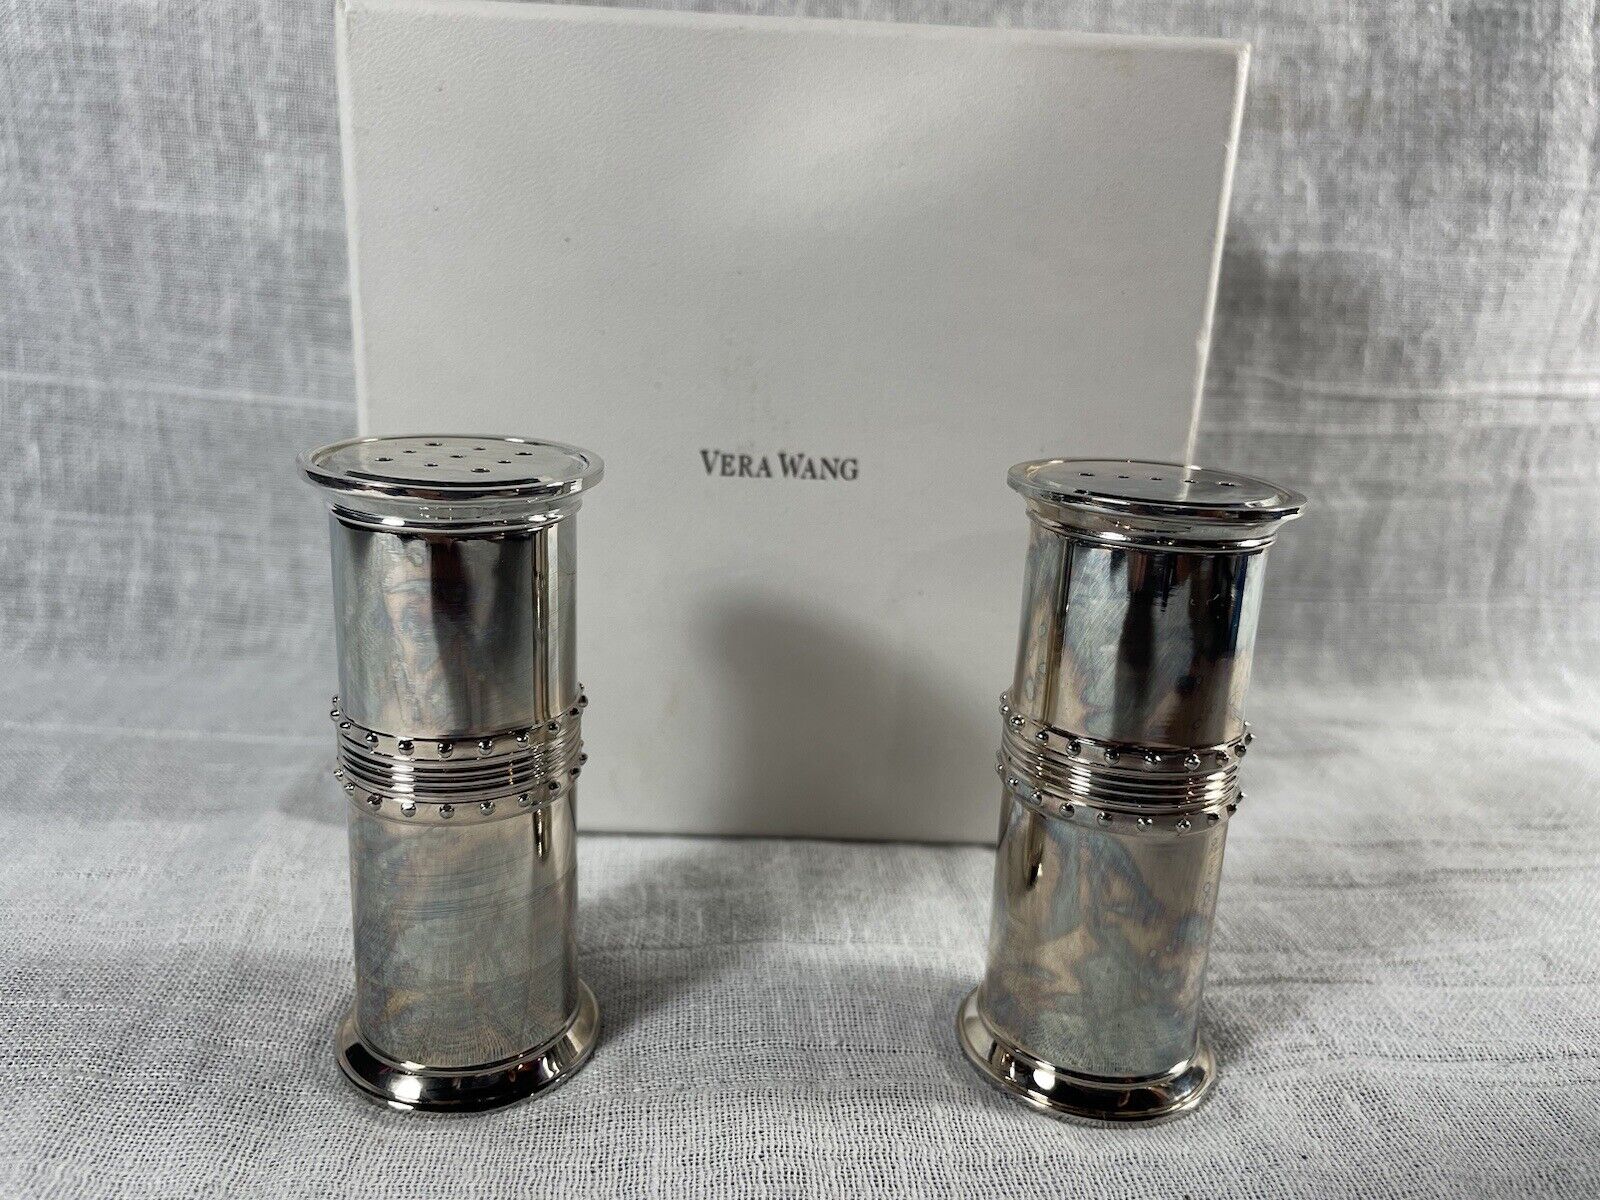 Vera Wang by Wedgewood Grosgrain Salt & Pepper Shakers Silver Plated Set NOB